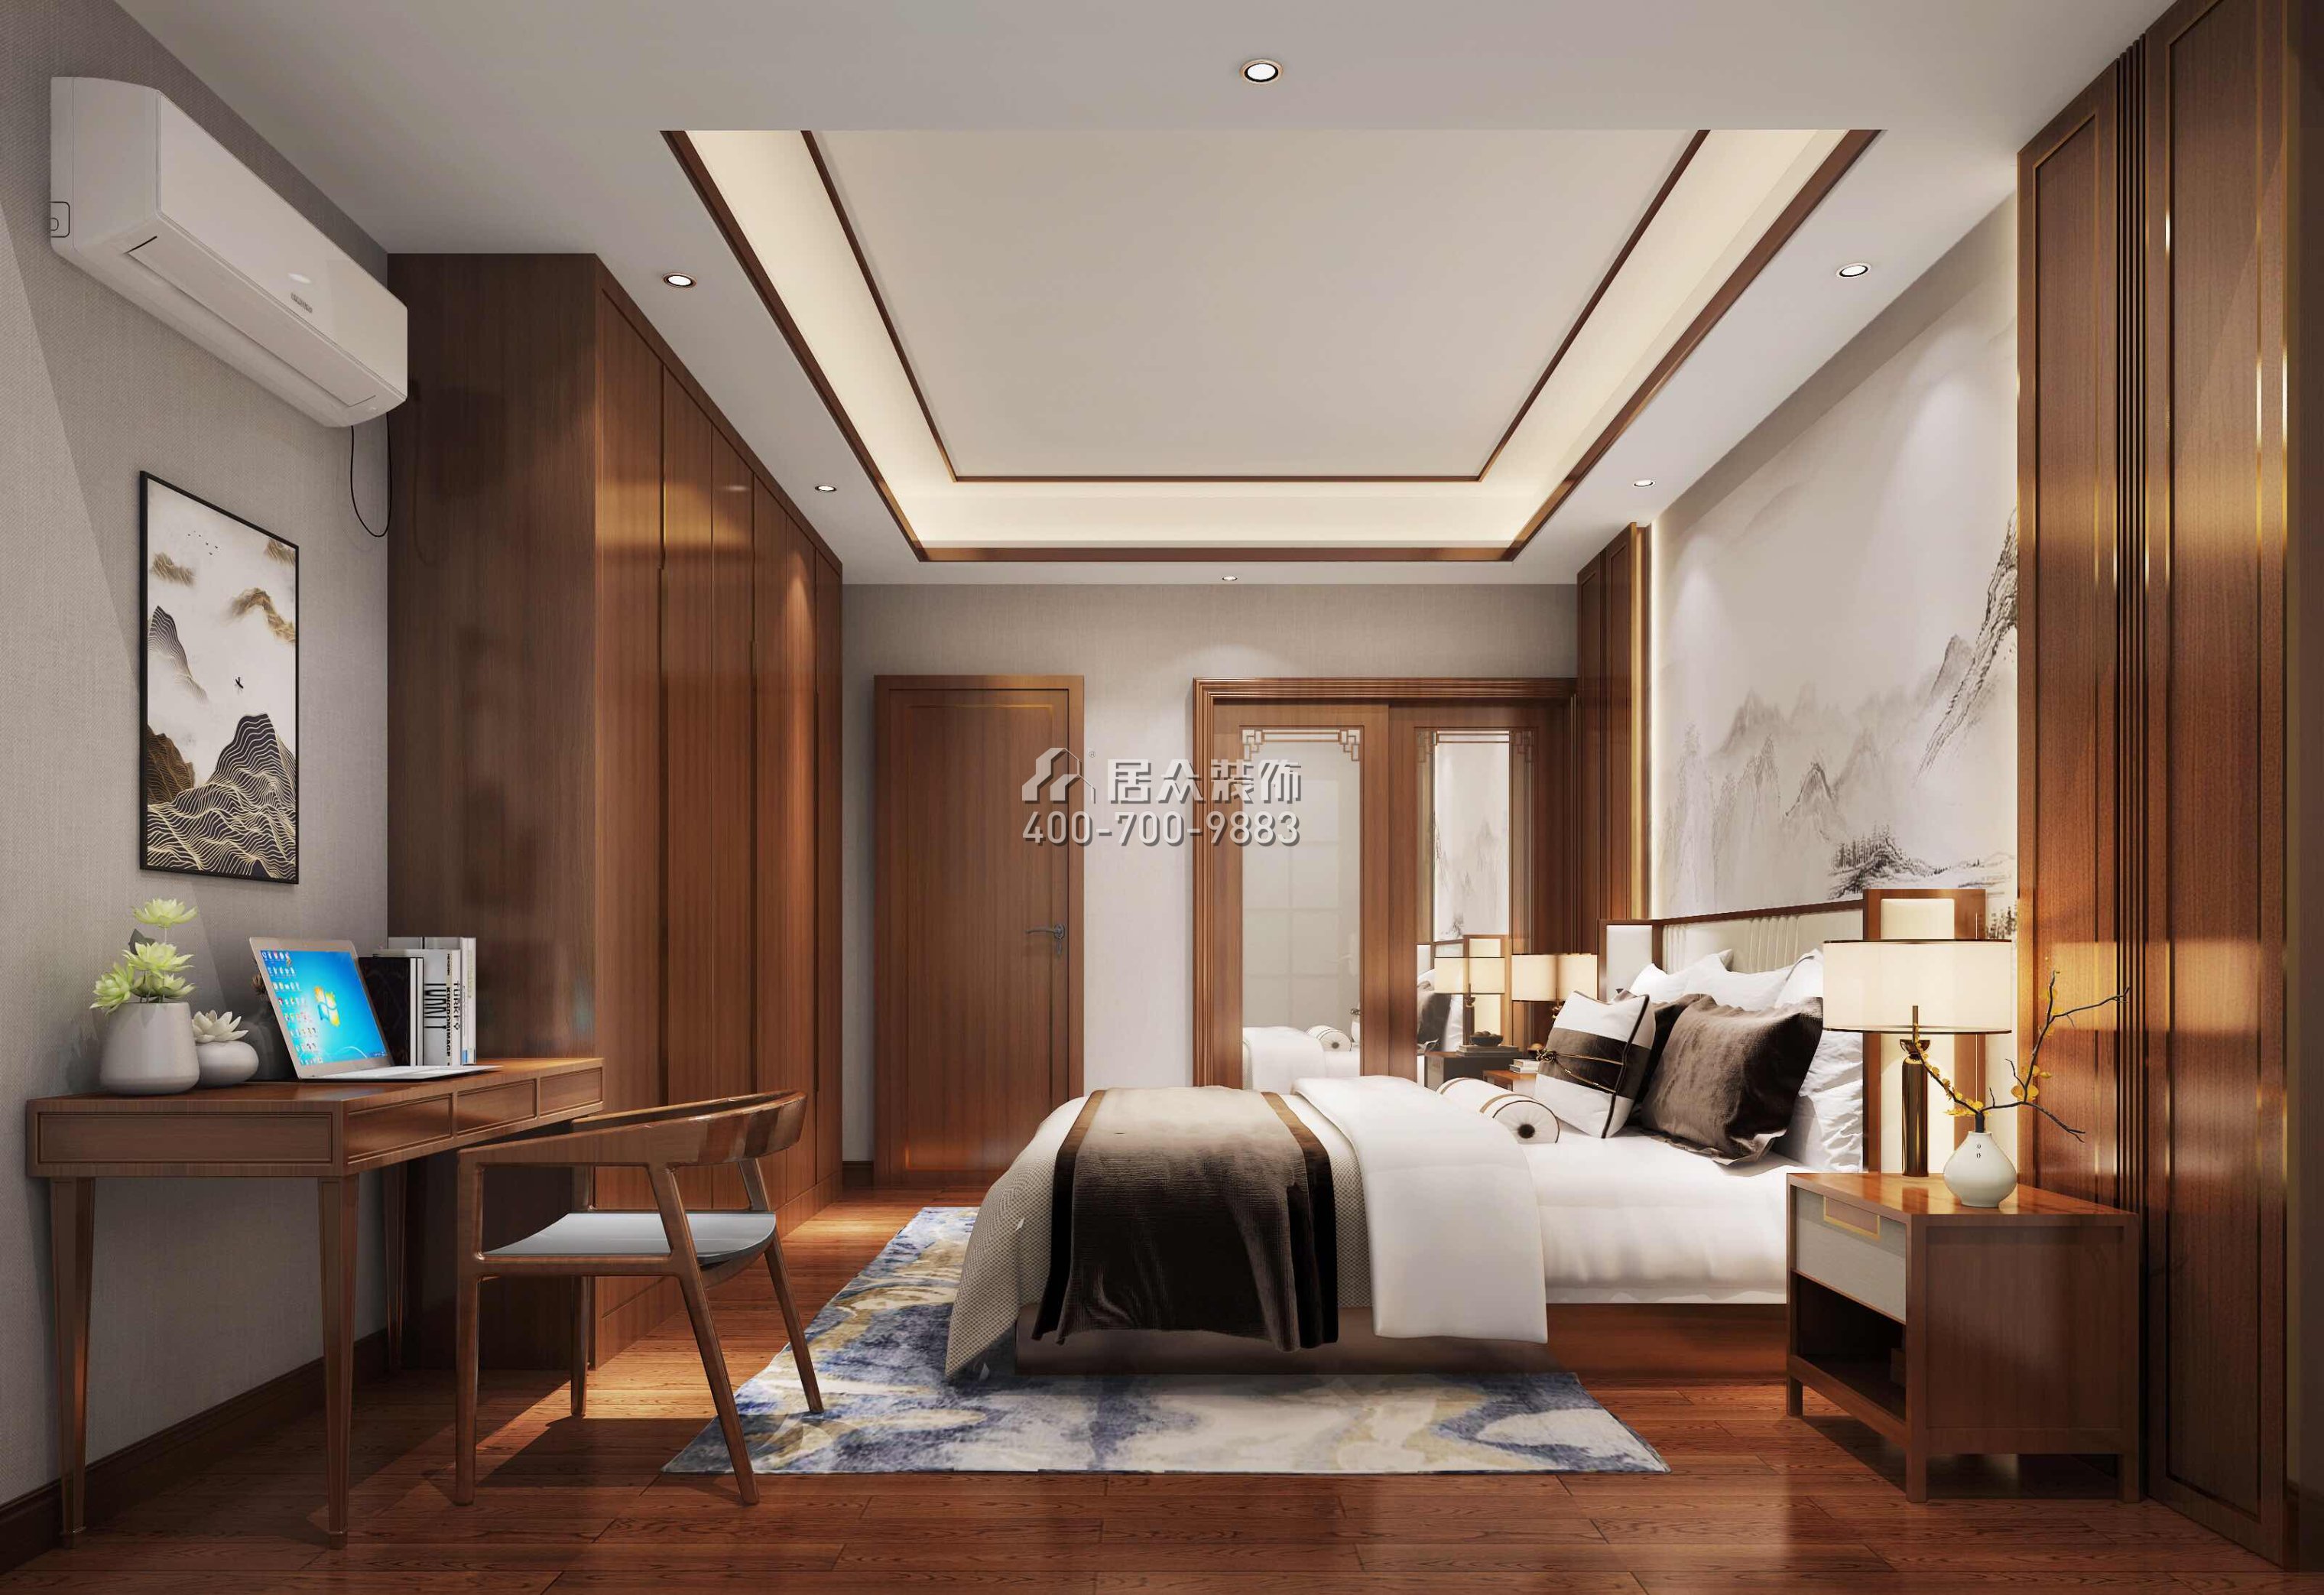 東江豪門160平方米中式風格平層戶型臥室裝修效果圖